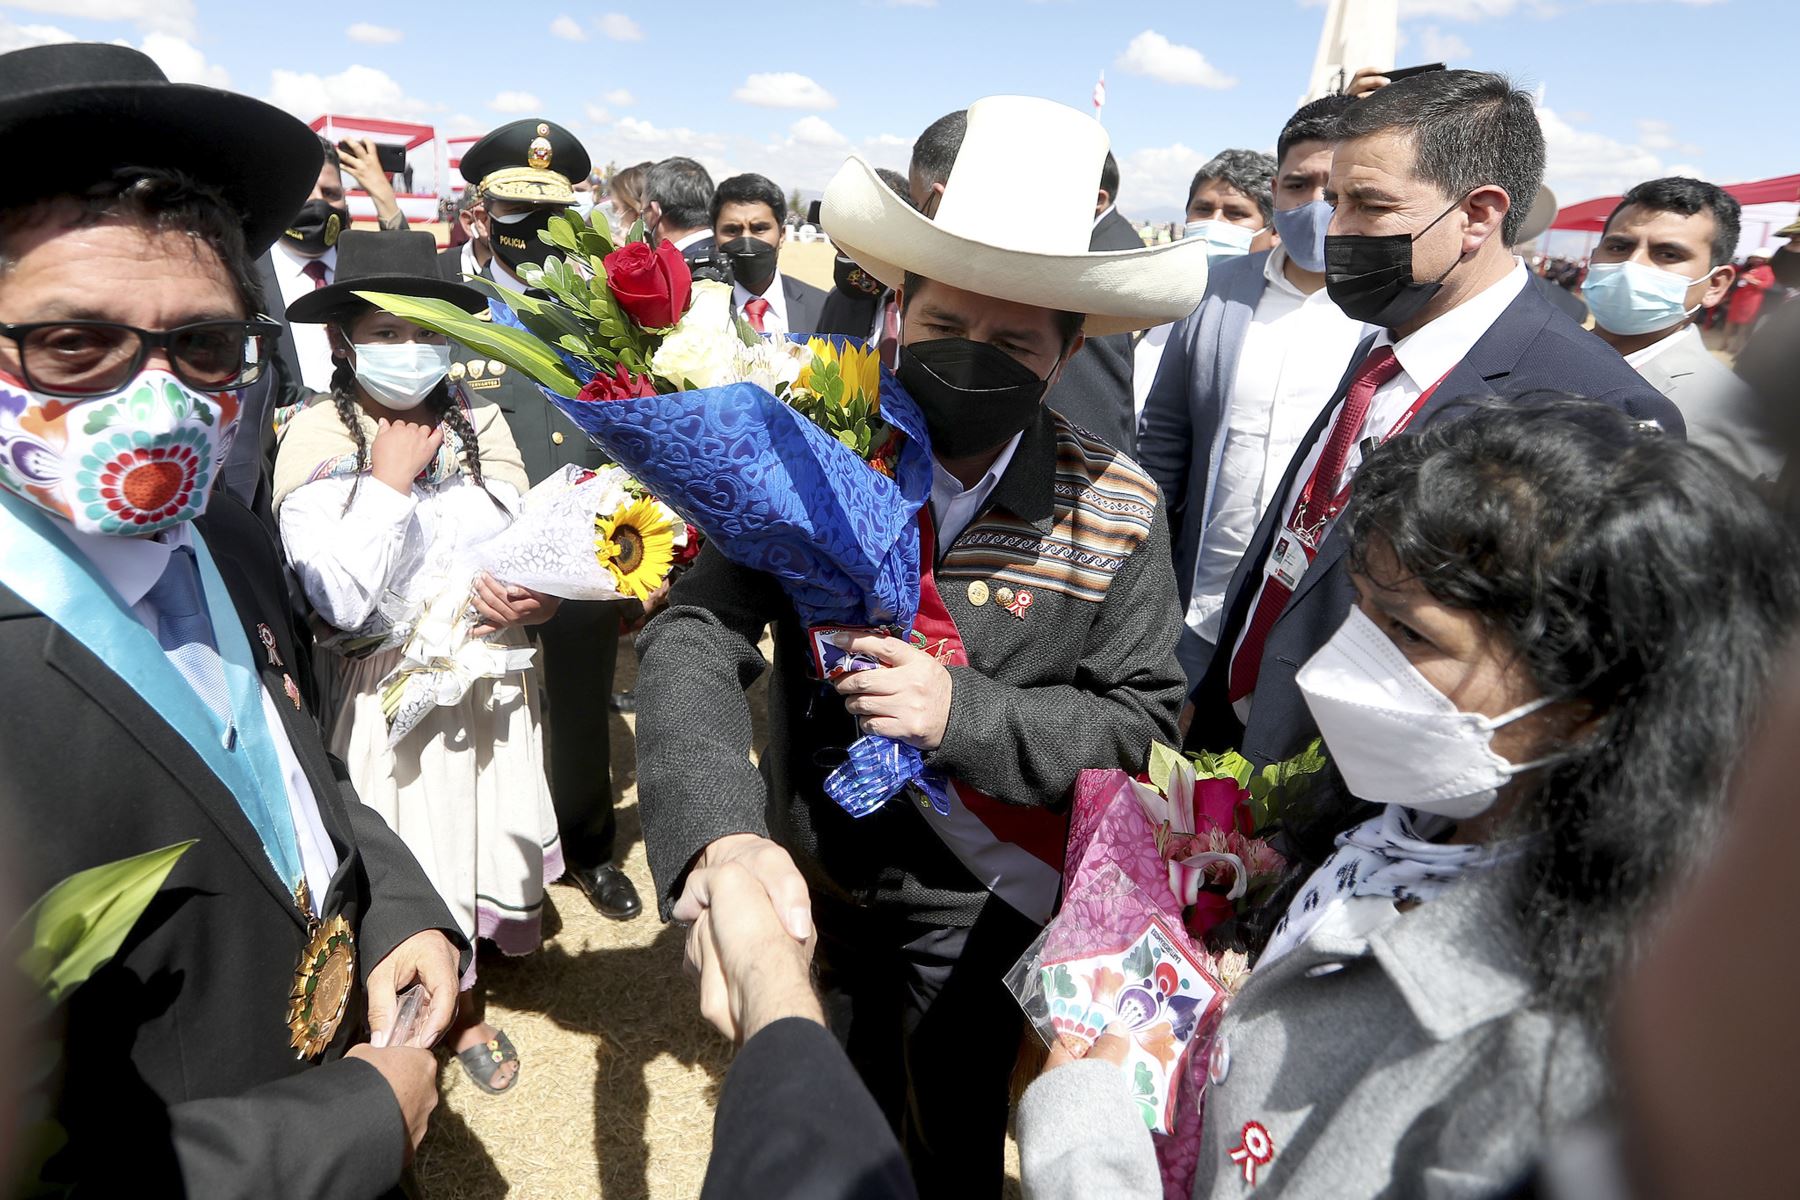 El presidente de la República, Pedro Castillo, encabeza la ceremonia de juramentación simbólica en la Pampa de la Quinua, ciudad de Ayacucho. Foto: ANDINA/ Prensa Presidencia